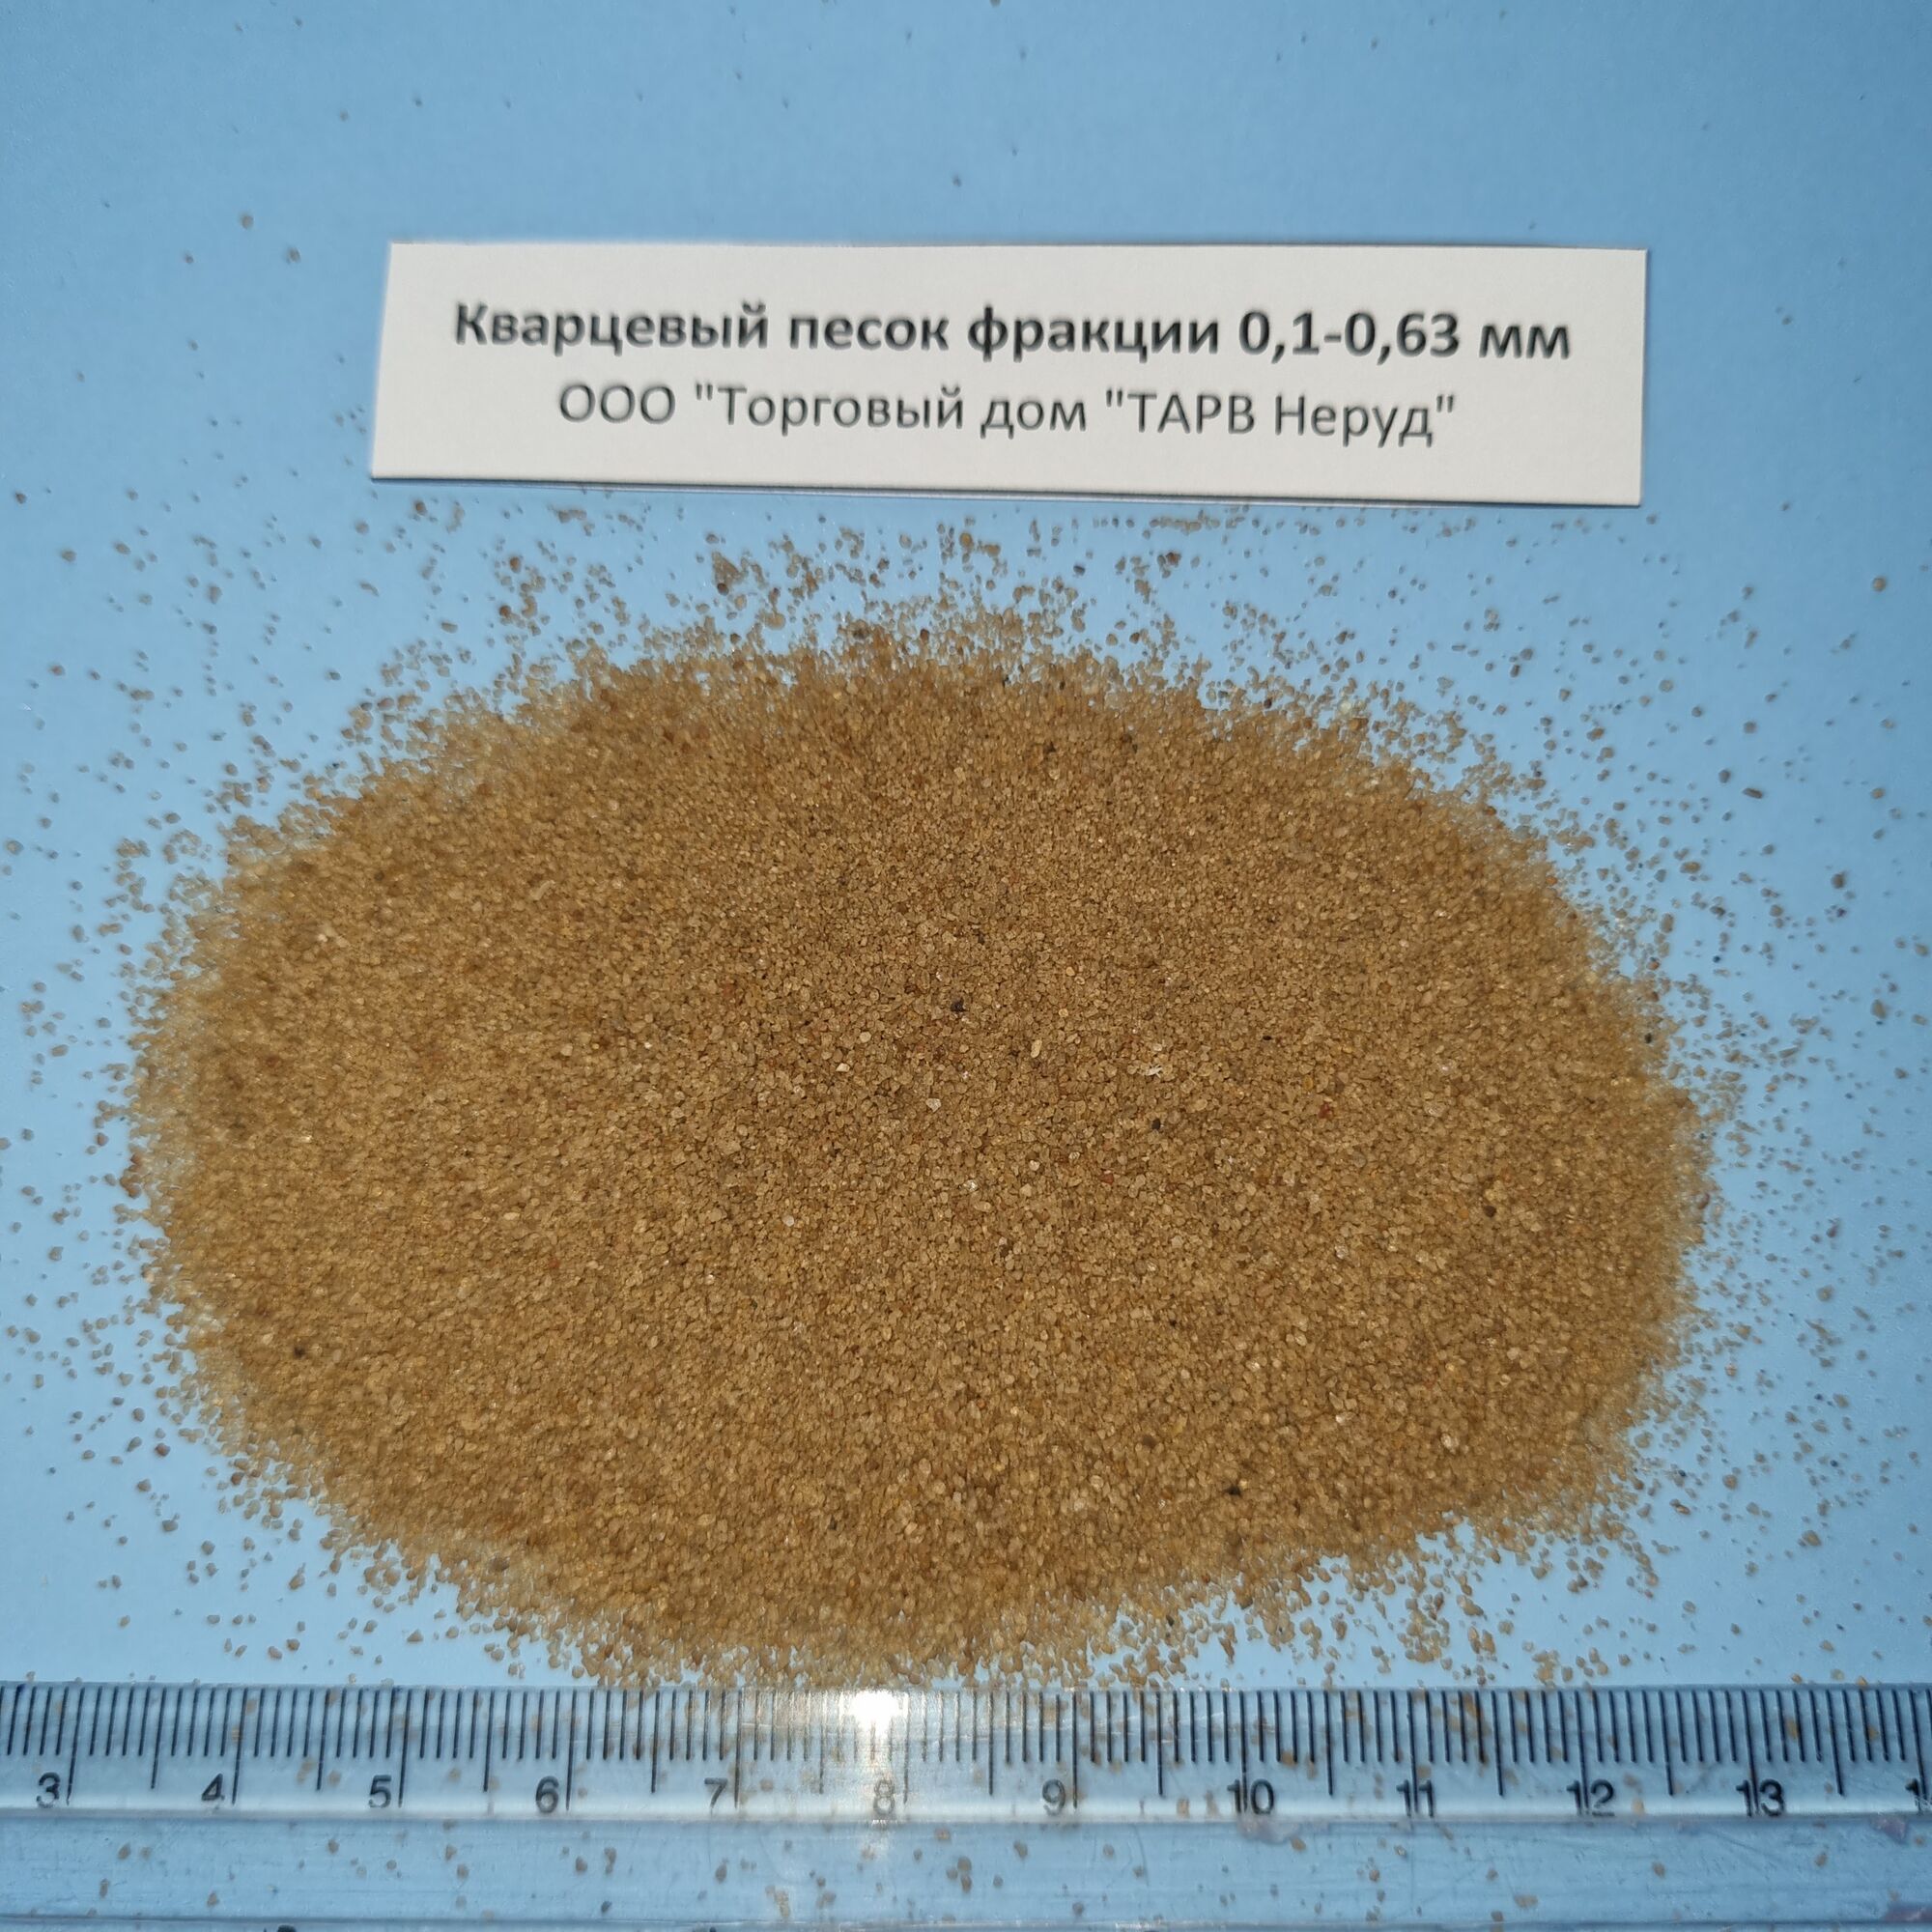 Кварцевый песок фракция 0,3-0,63 мм в мешках по 25 кг самовывоз или доставка из Воронежа (не включена)